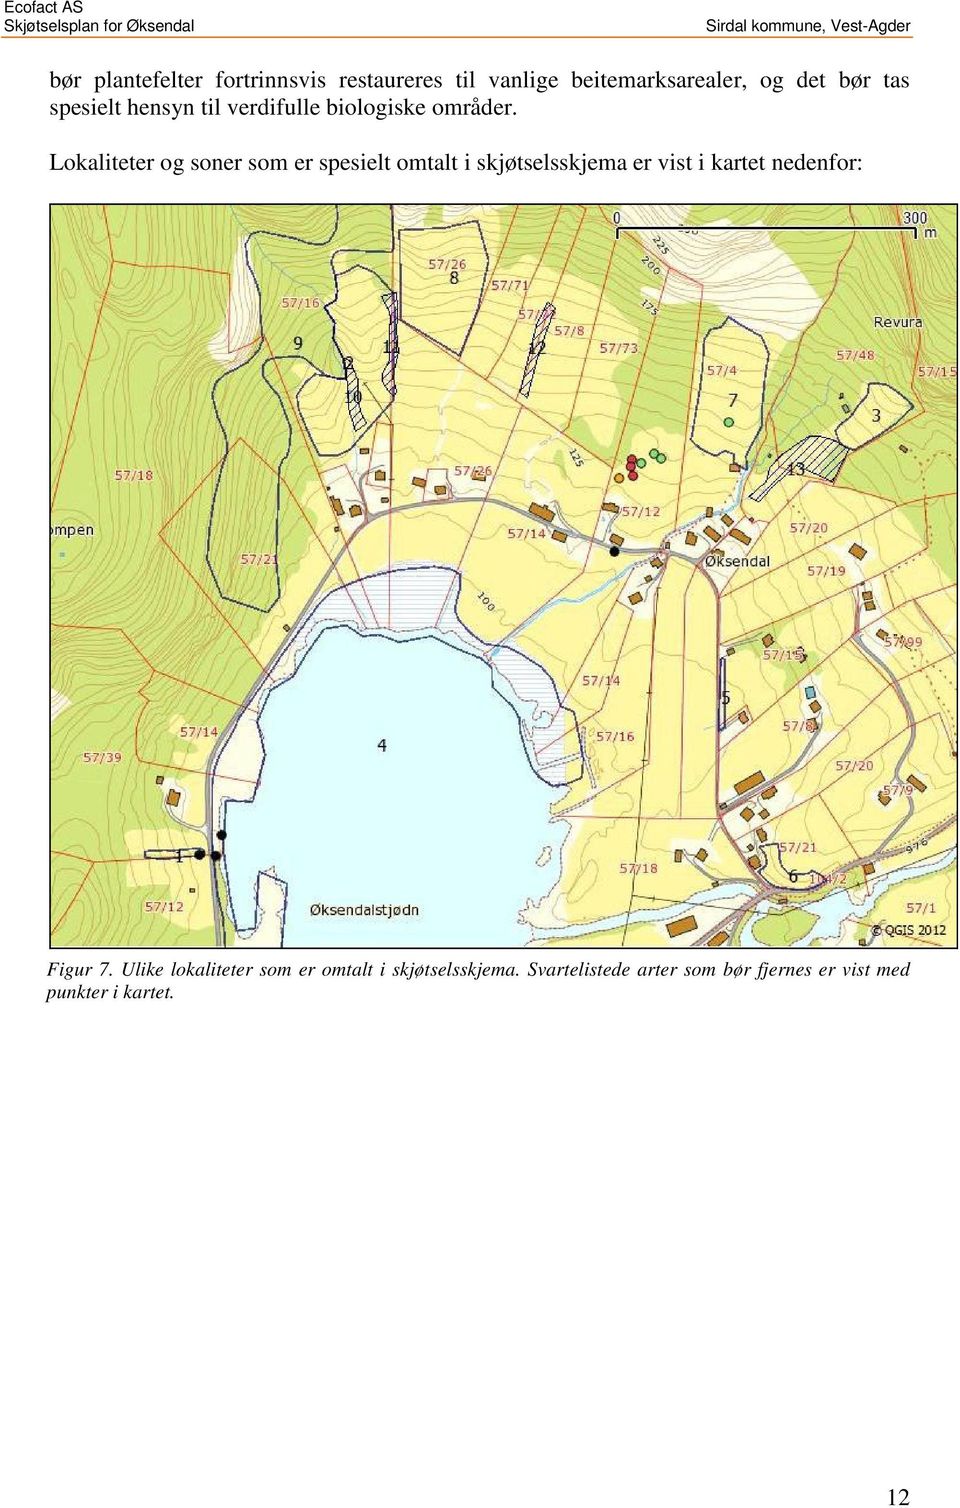 Lokaliteter og soner som er spesielt omtalt i skjøtselsskjema er vist i kartet nedenfor: